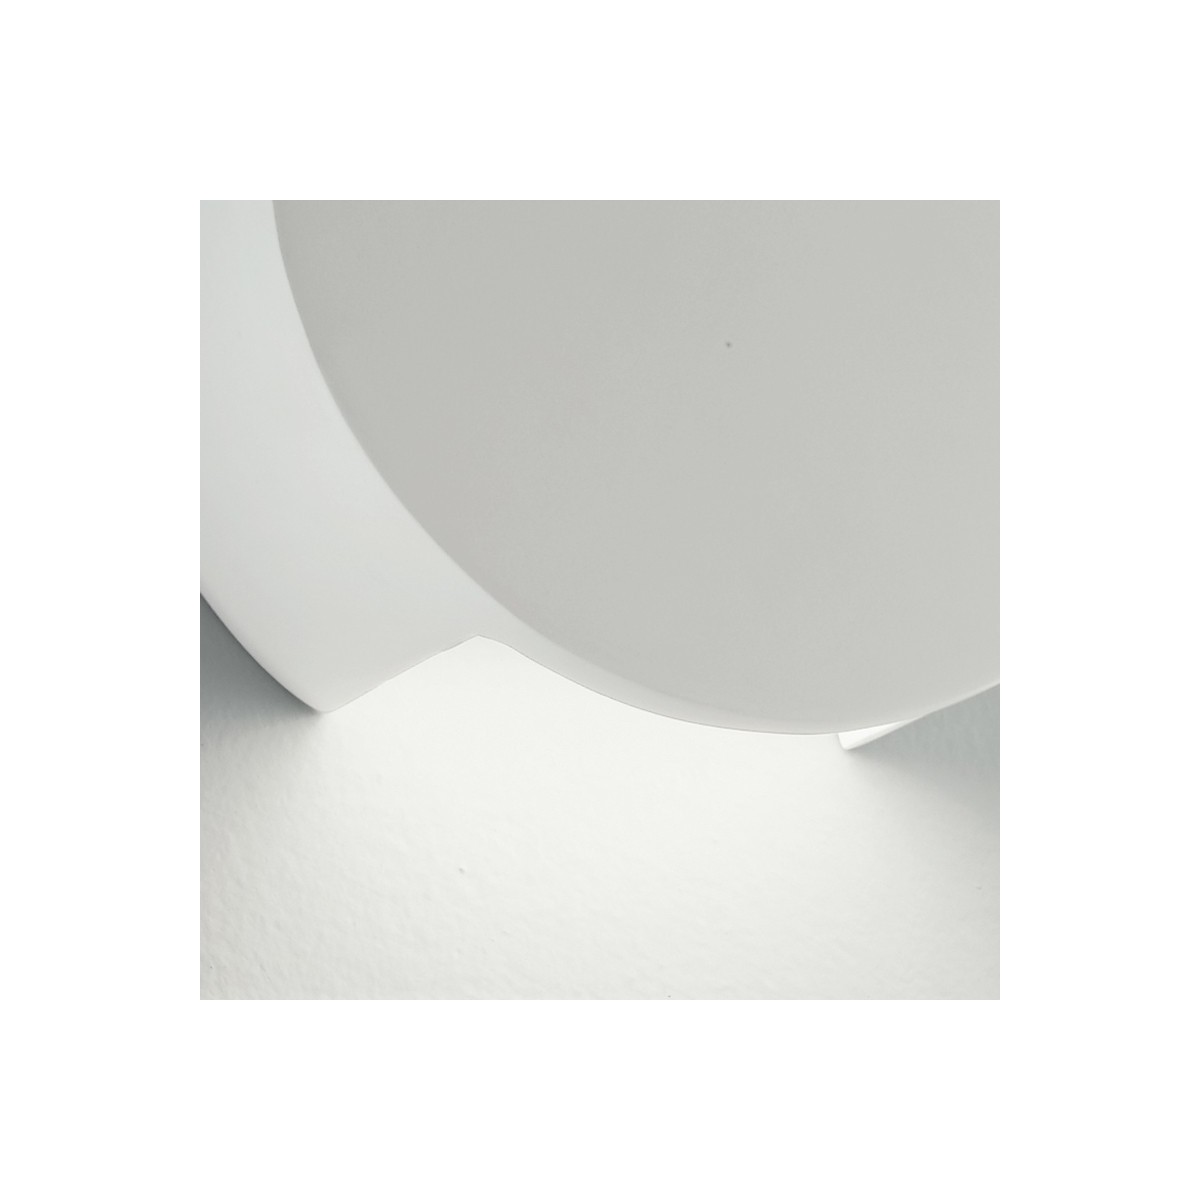 Structure en plâtre blanc avec application de diffusion de lumière inférieure Leiron